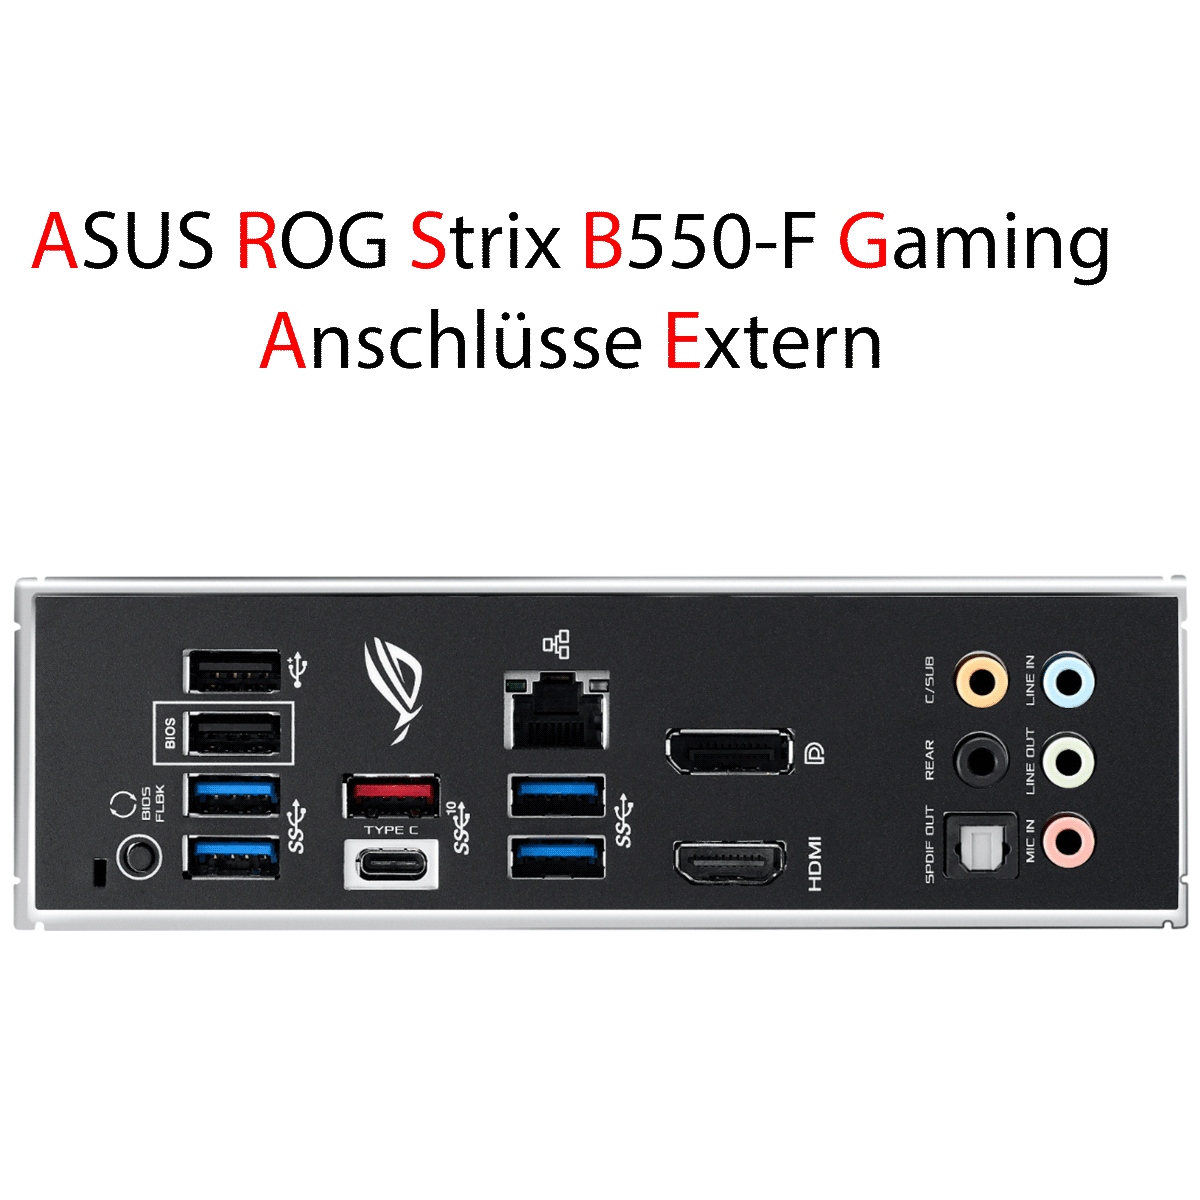 PC Bundle • AMD Ryzen 7 5800X • Asus Rog Strix B550-F Gaming • 16GB DDR4-3200 Ram